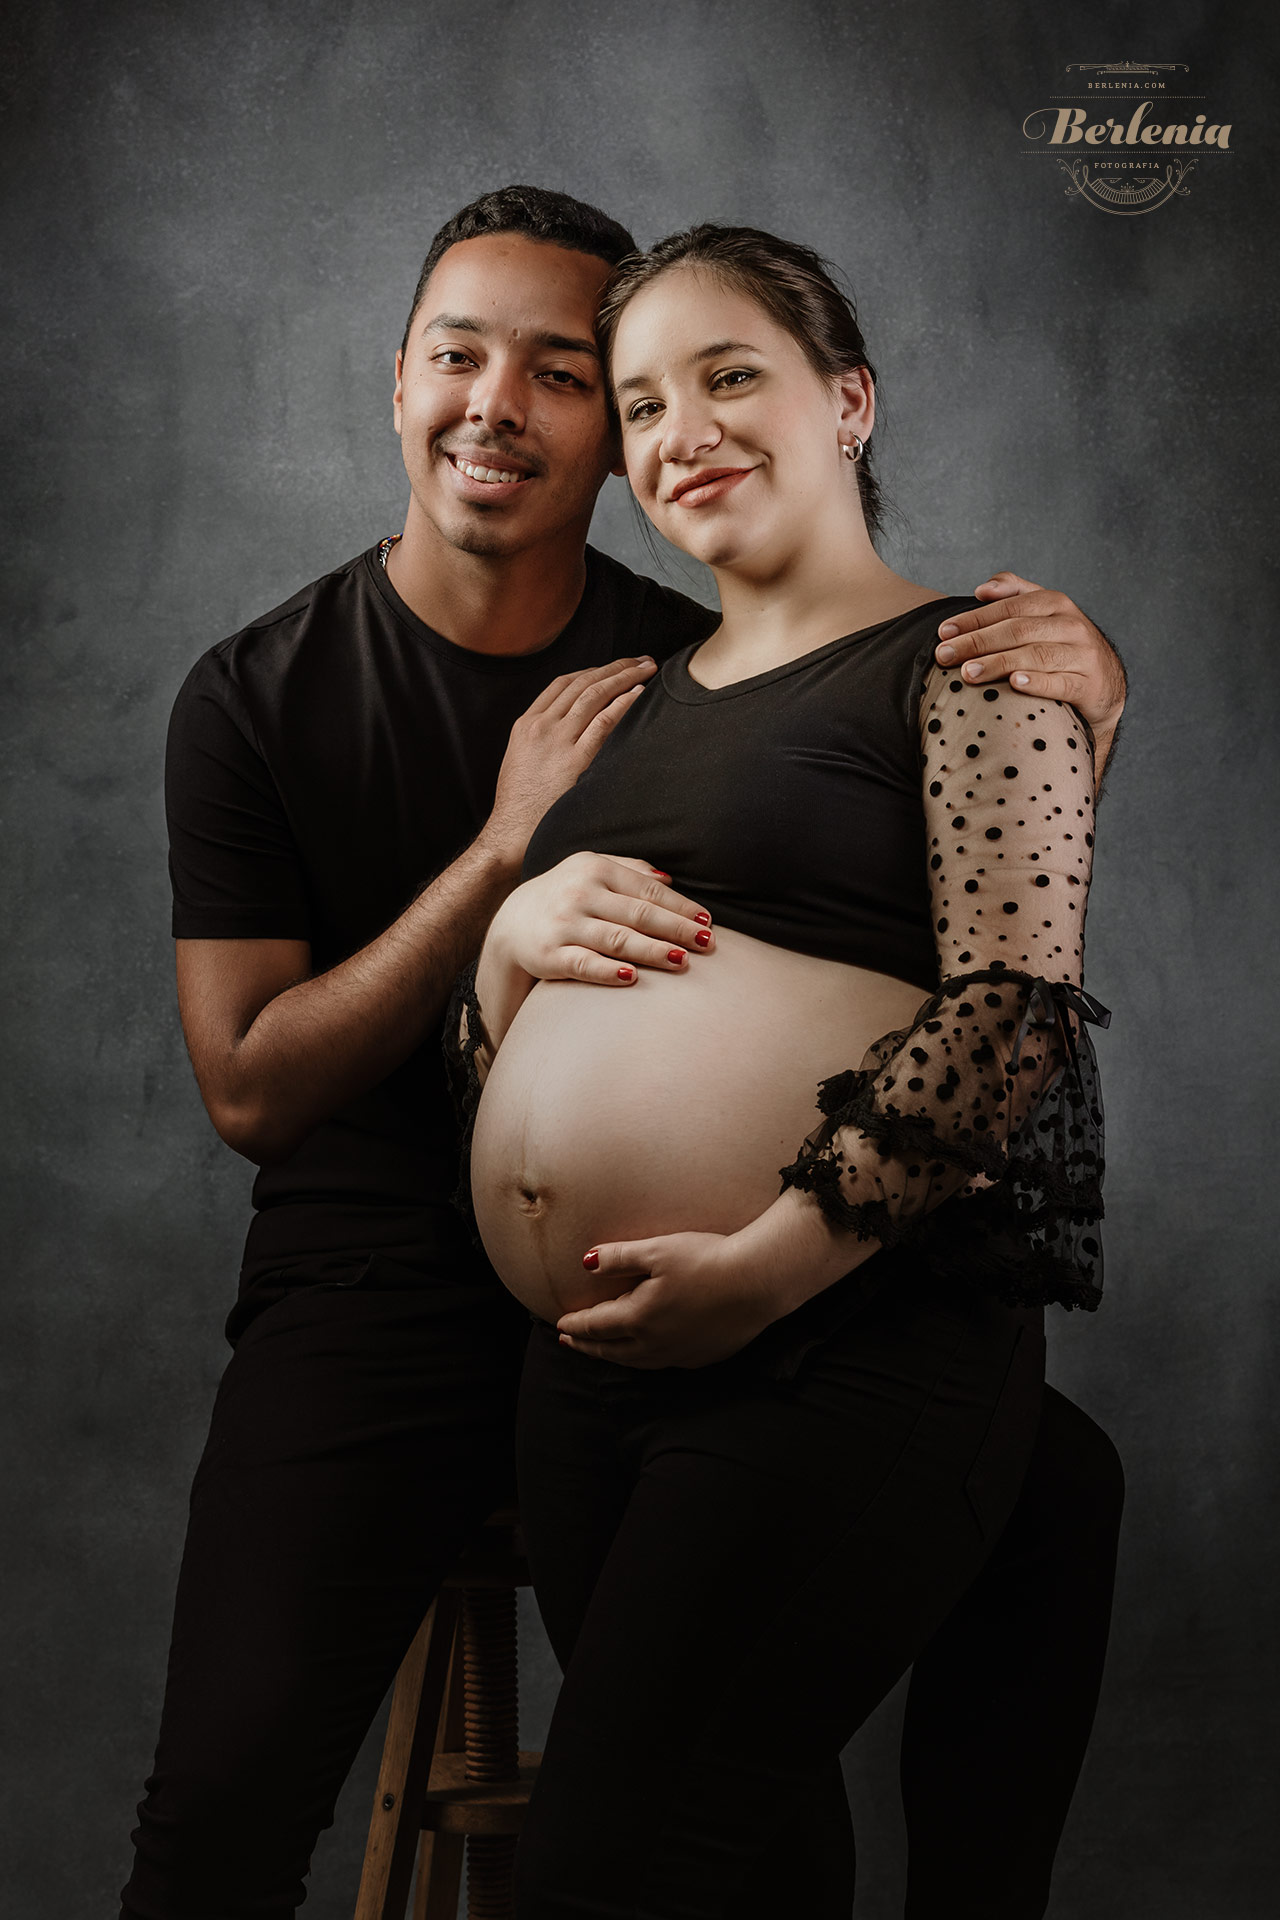 Fotografía de embarazo en estudio con pareja - Sesión de fotos embarazada - Villa Urquiza, CABA, Buenos Aires, Argentina - Berlenia Fotografía - 12